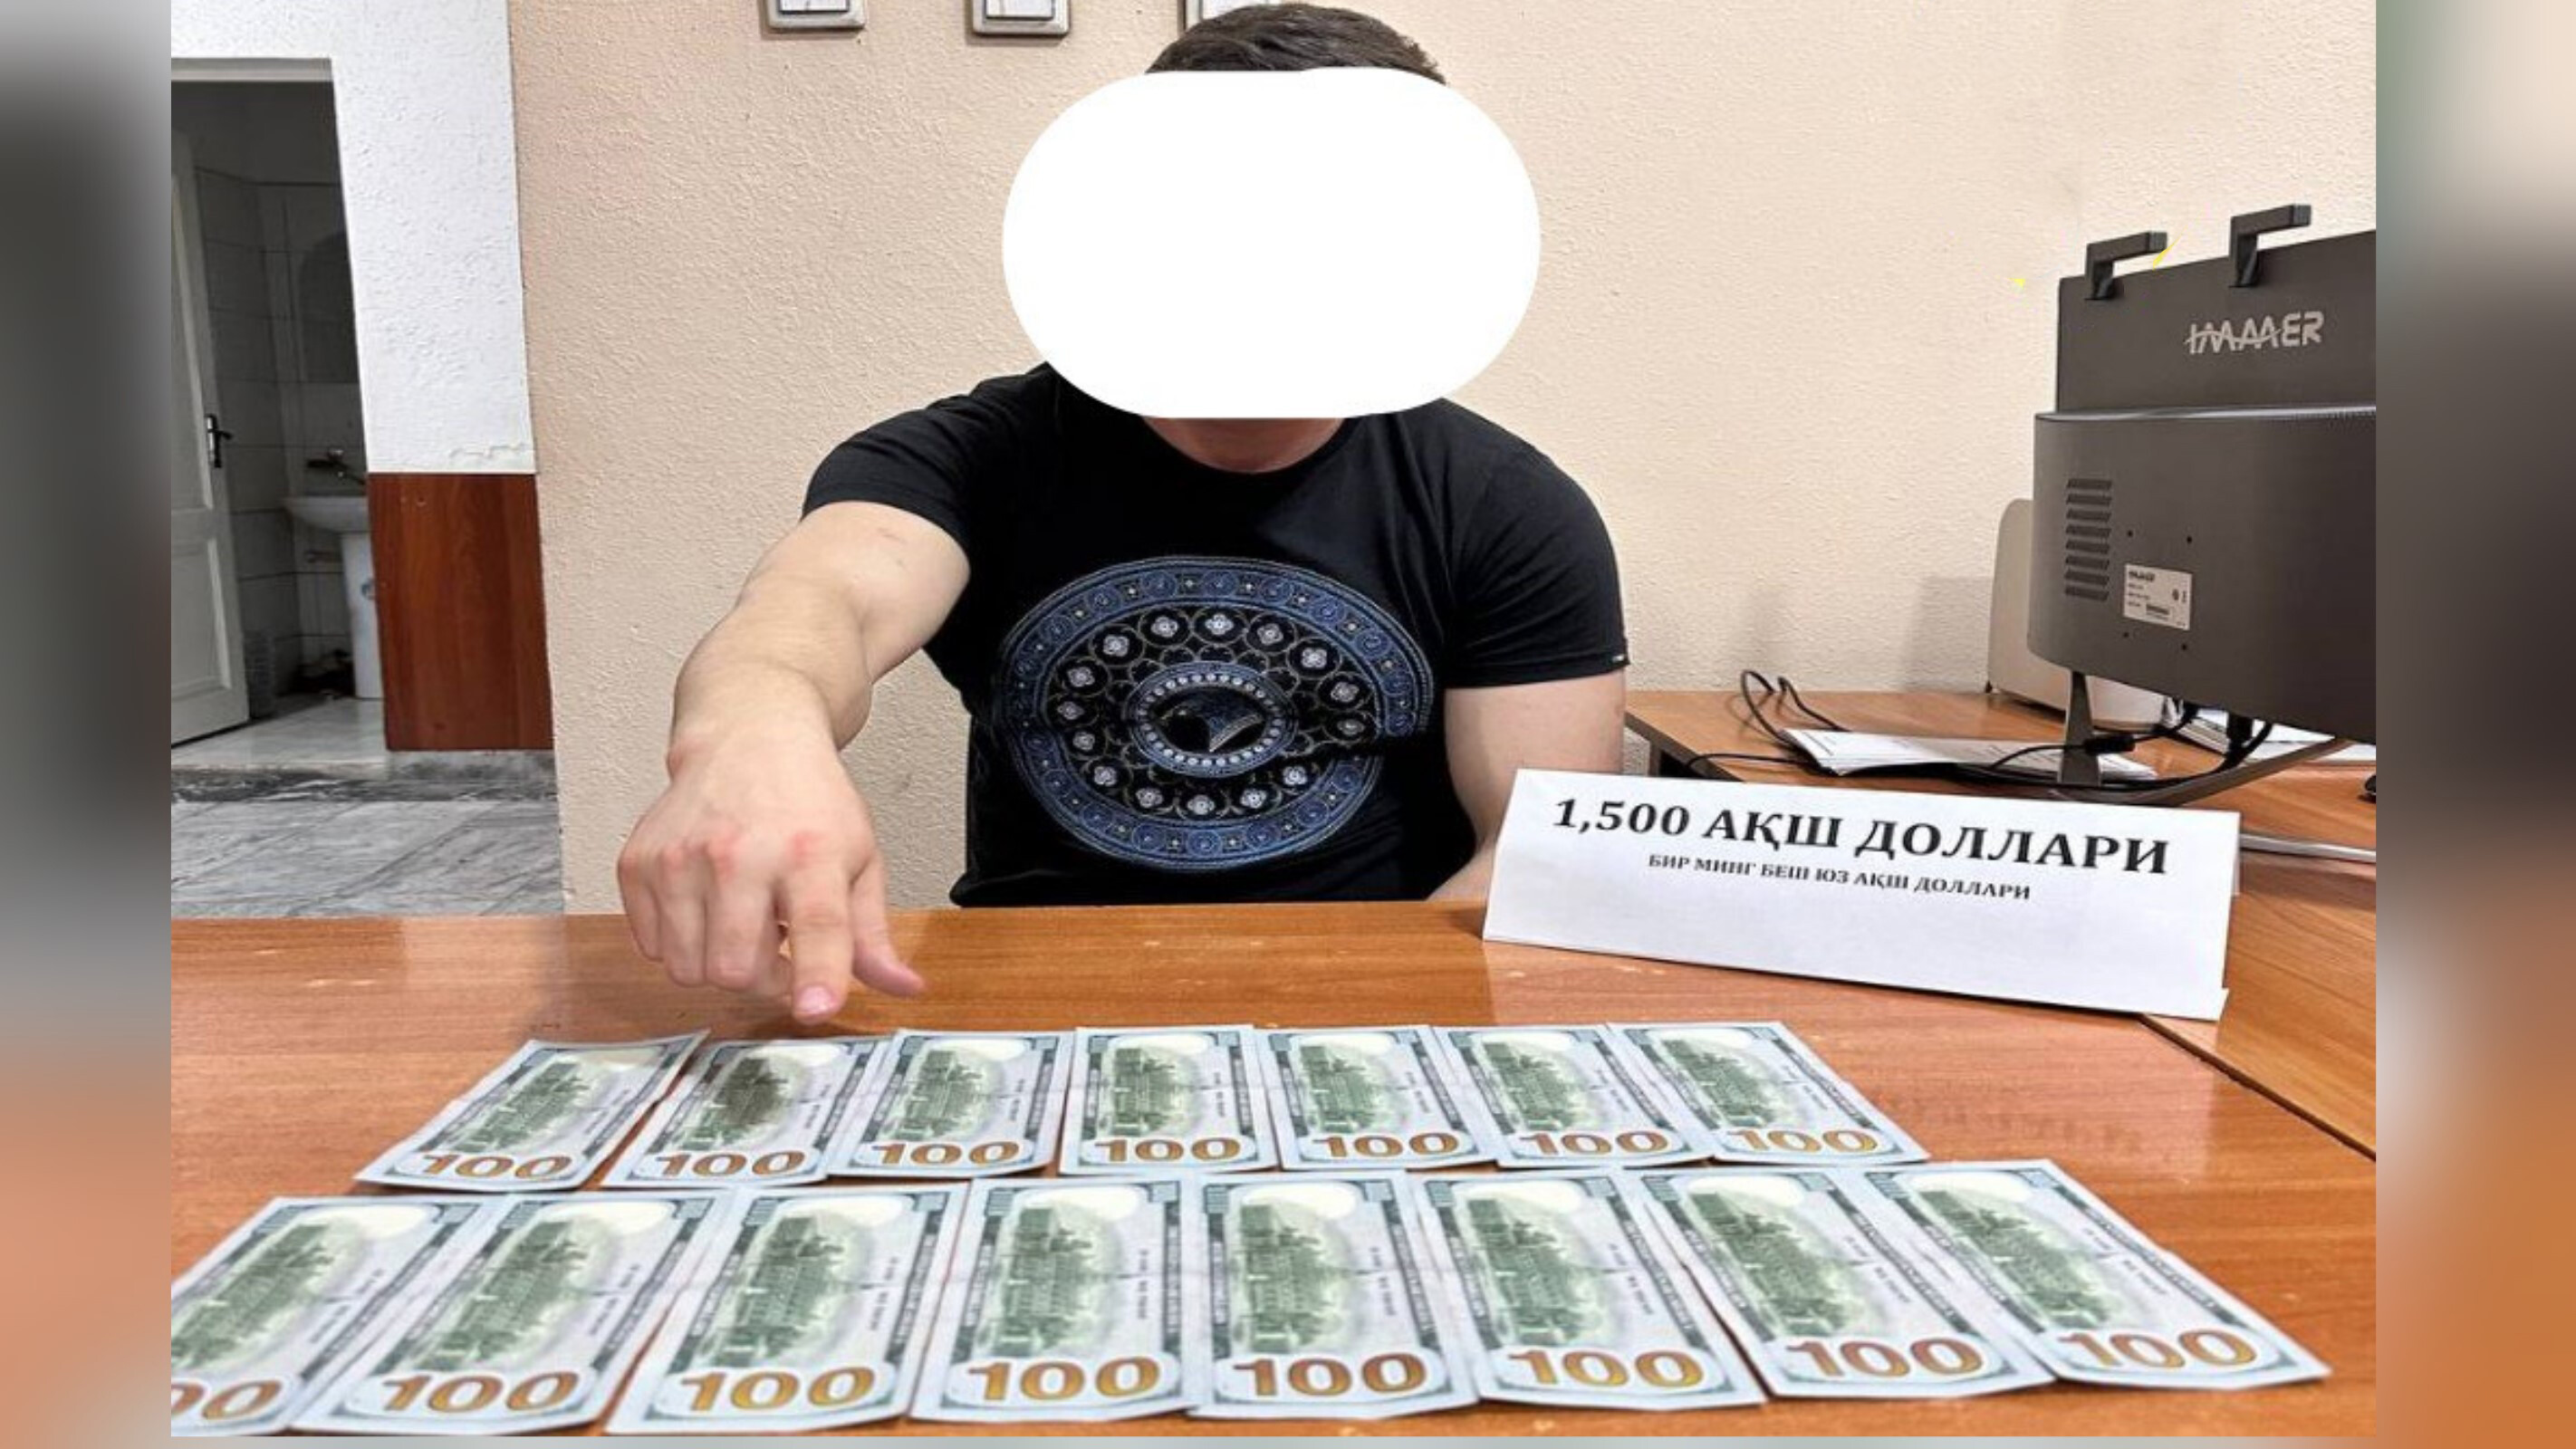 В Ташкенте задержали мужчину, обещавшего сертификат TOEFL без сдачи экзамена за $1500